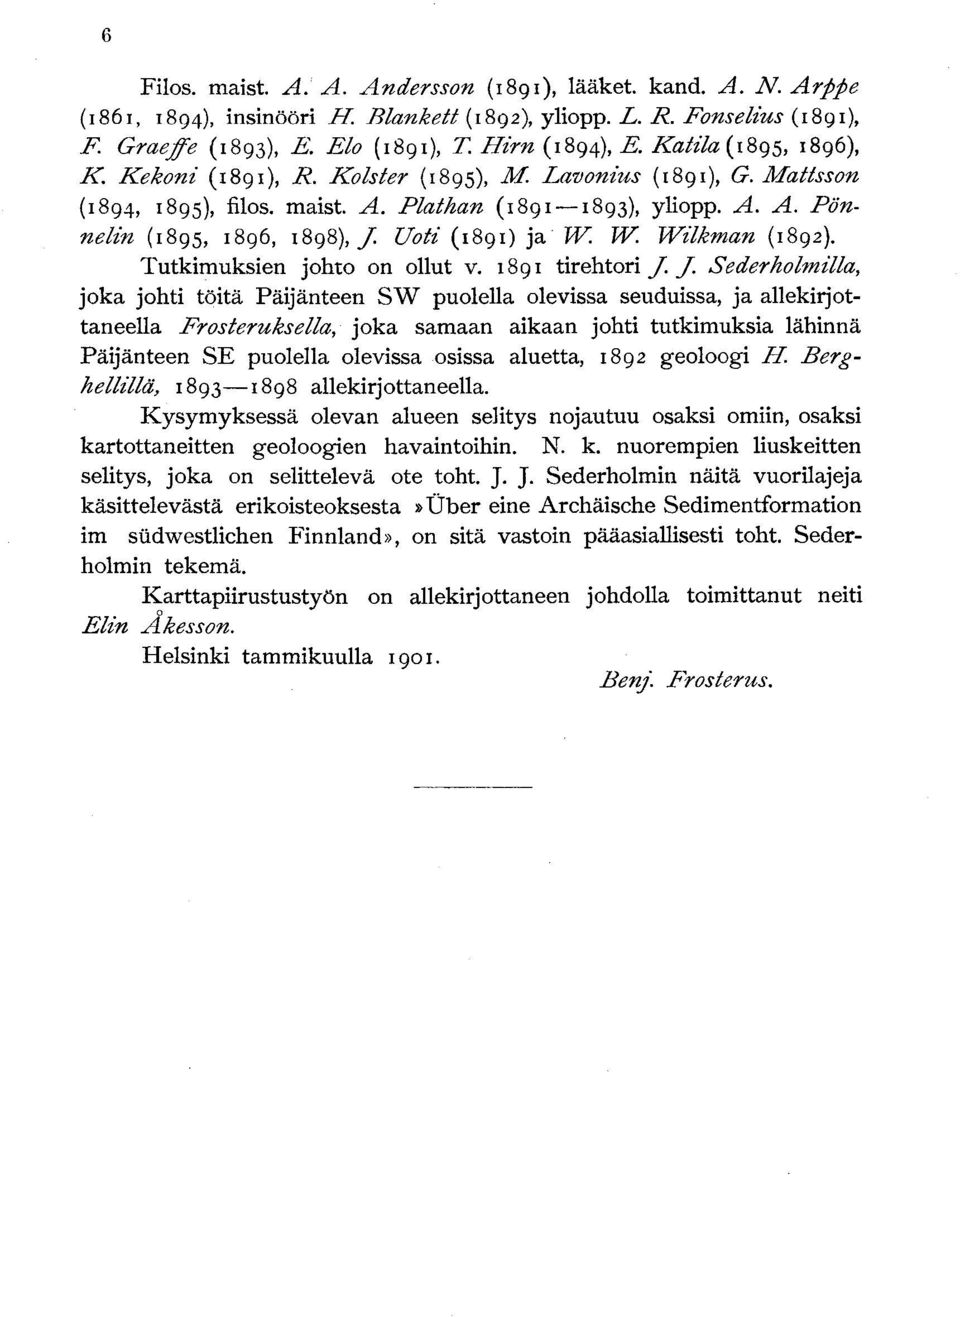 Uoti (1891) ja W. W. Wilkman (1892). Tutkimuksien johto on ollut v. 1891 tirehtori J.